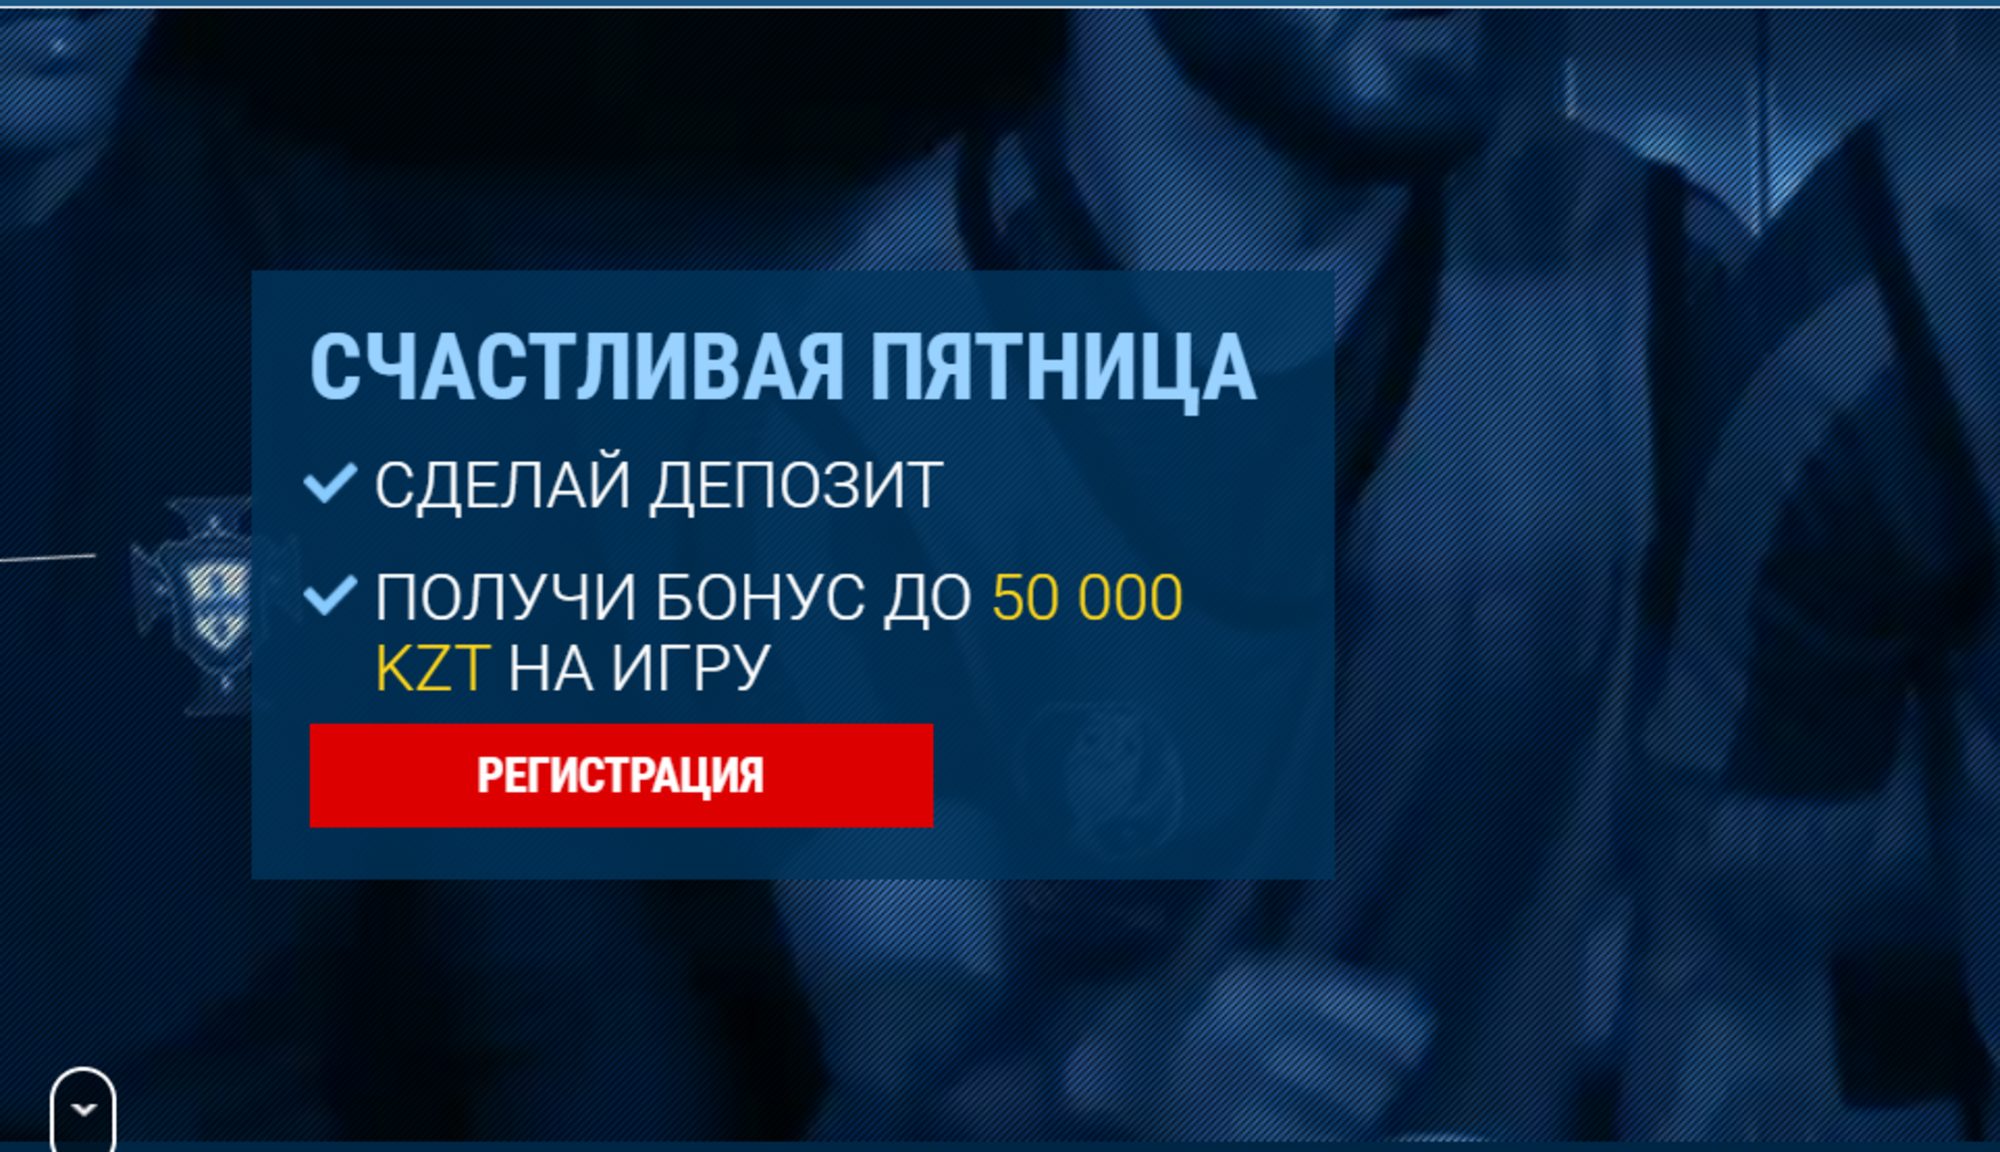 «1xBet Казахстан» предлагает получить 100% до 50000 KZT за депозит по пятницам